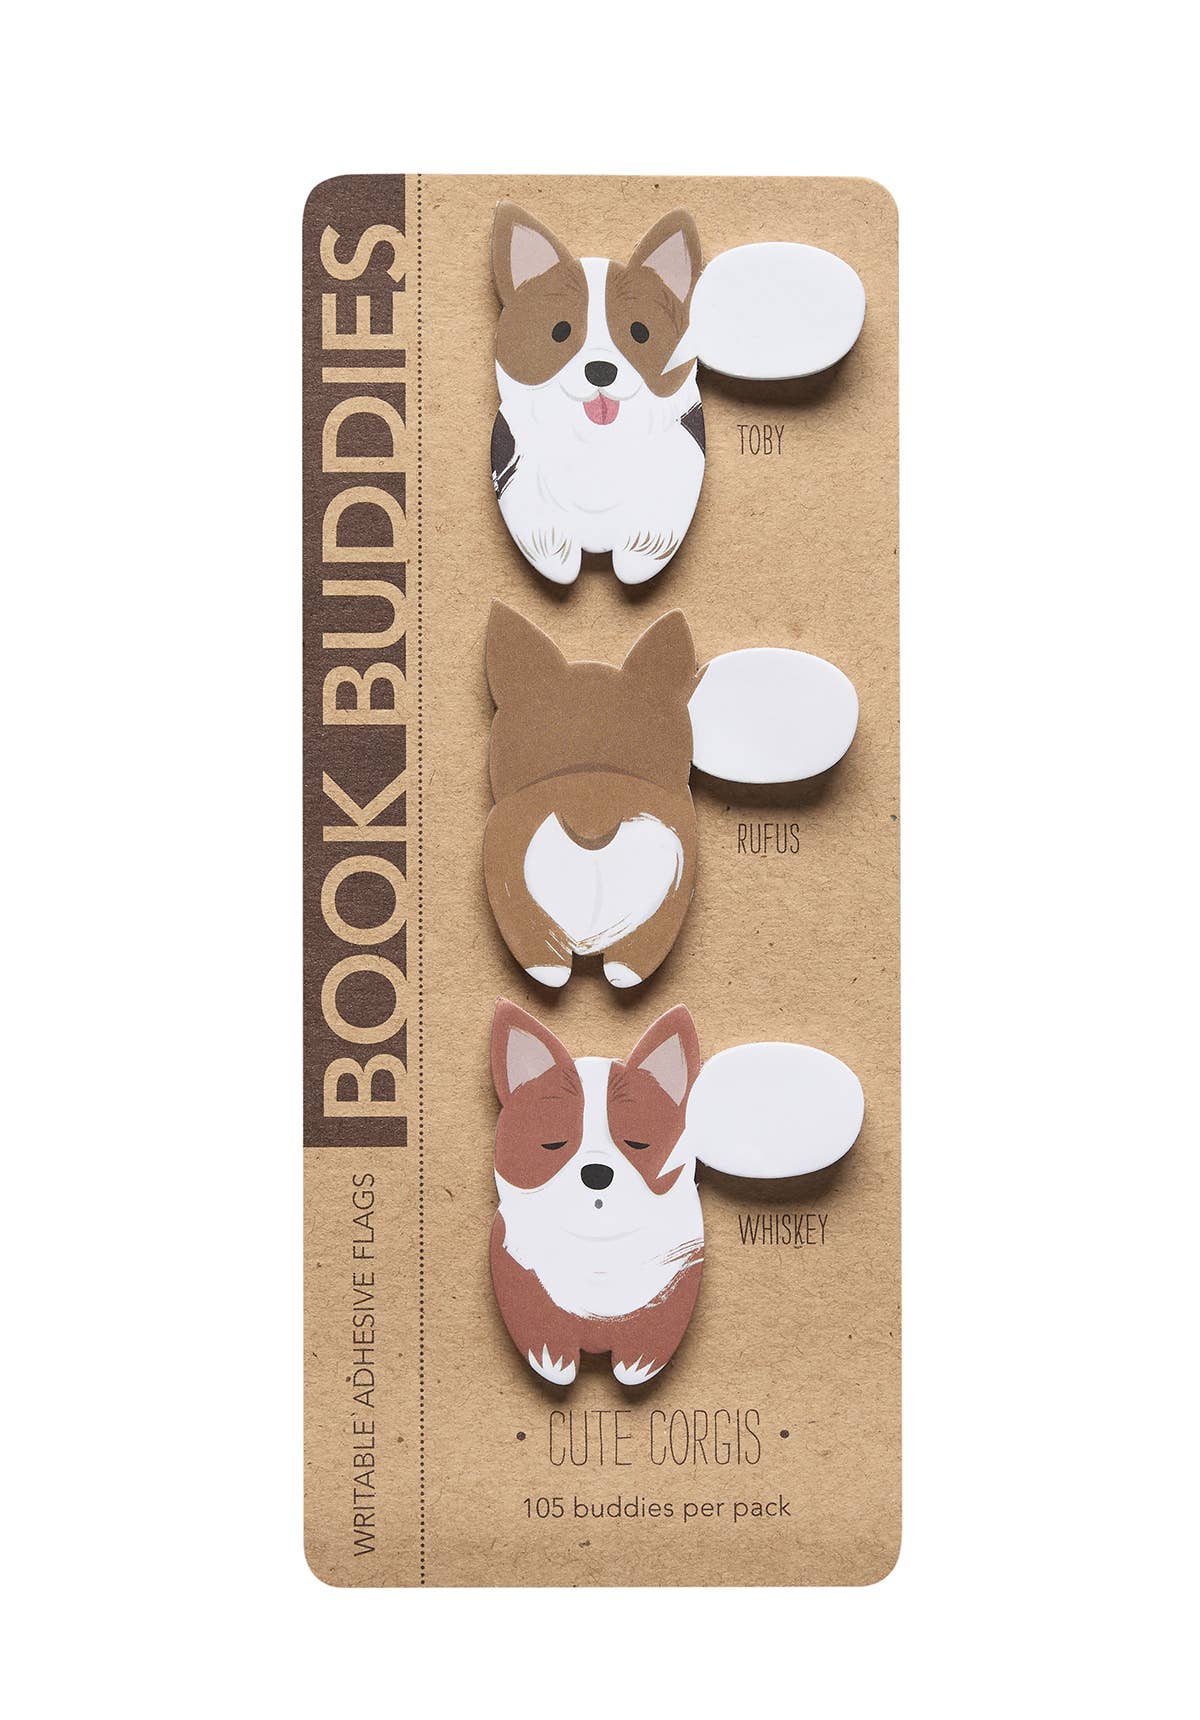 Book Buddies - Cute Corgis